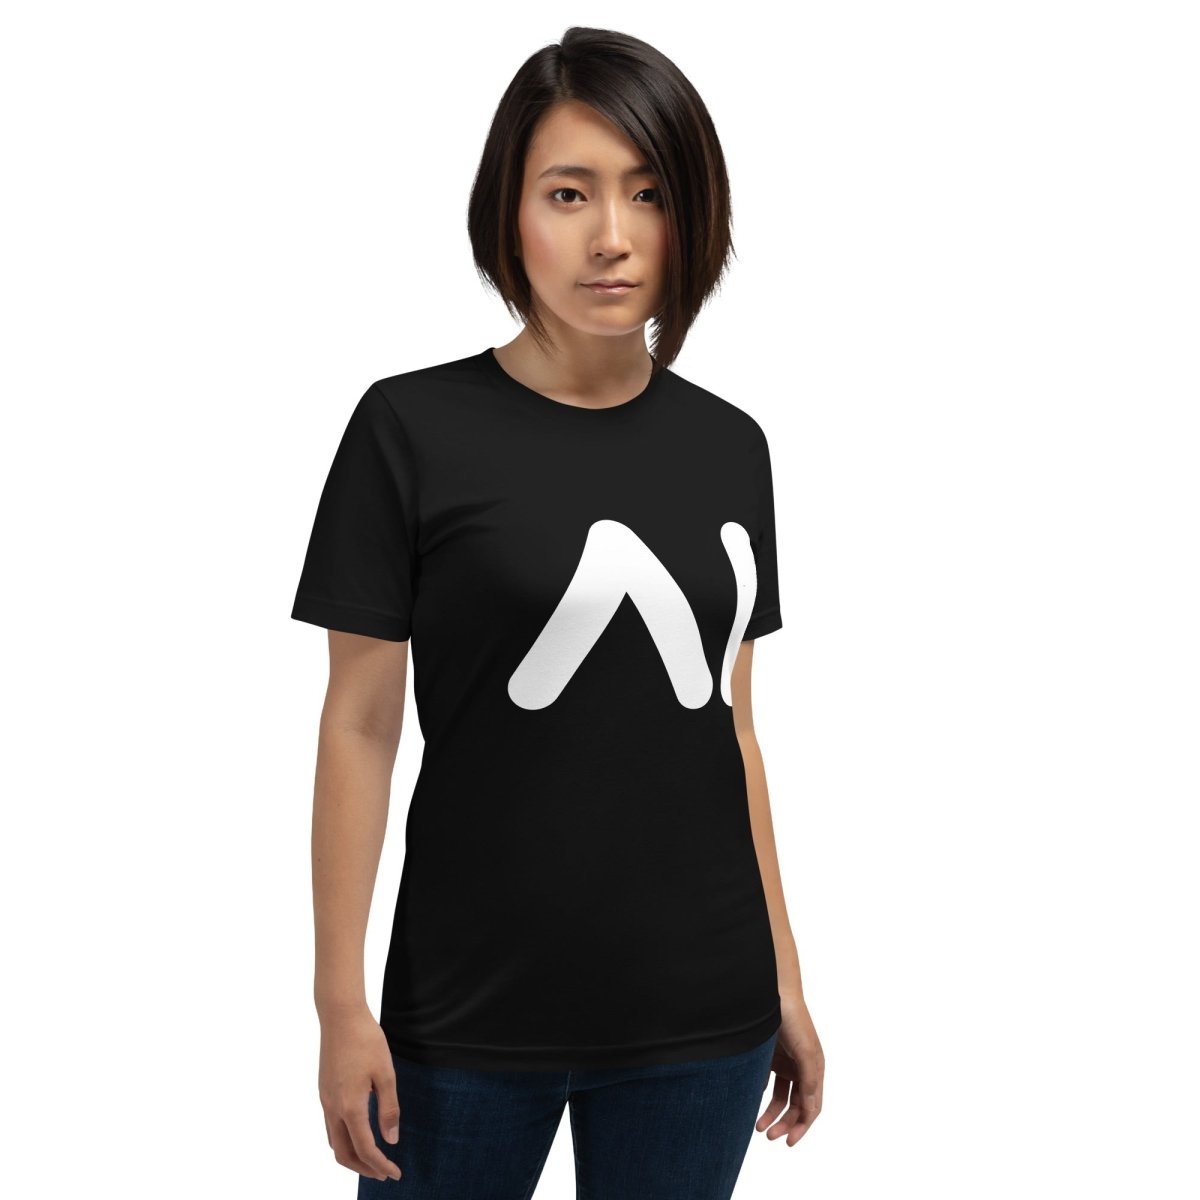 AI Logo T - Shirt (unisex) - Black - AI Store